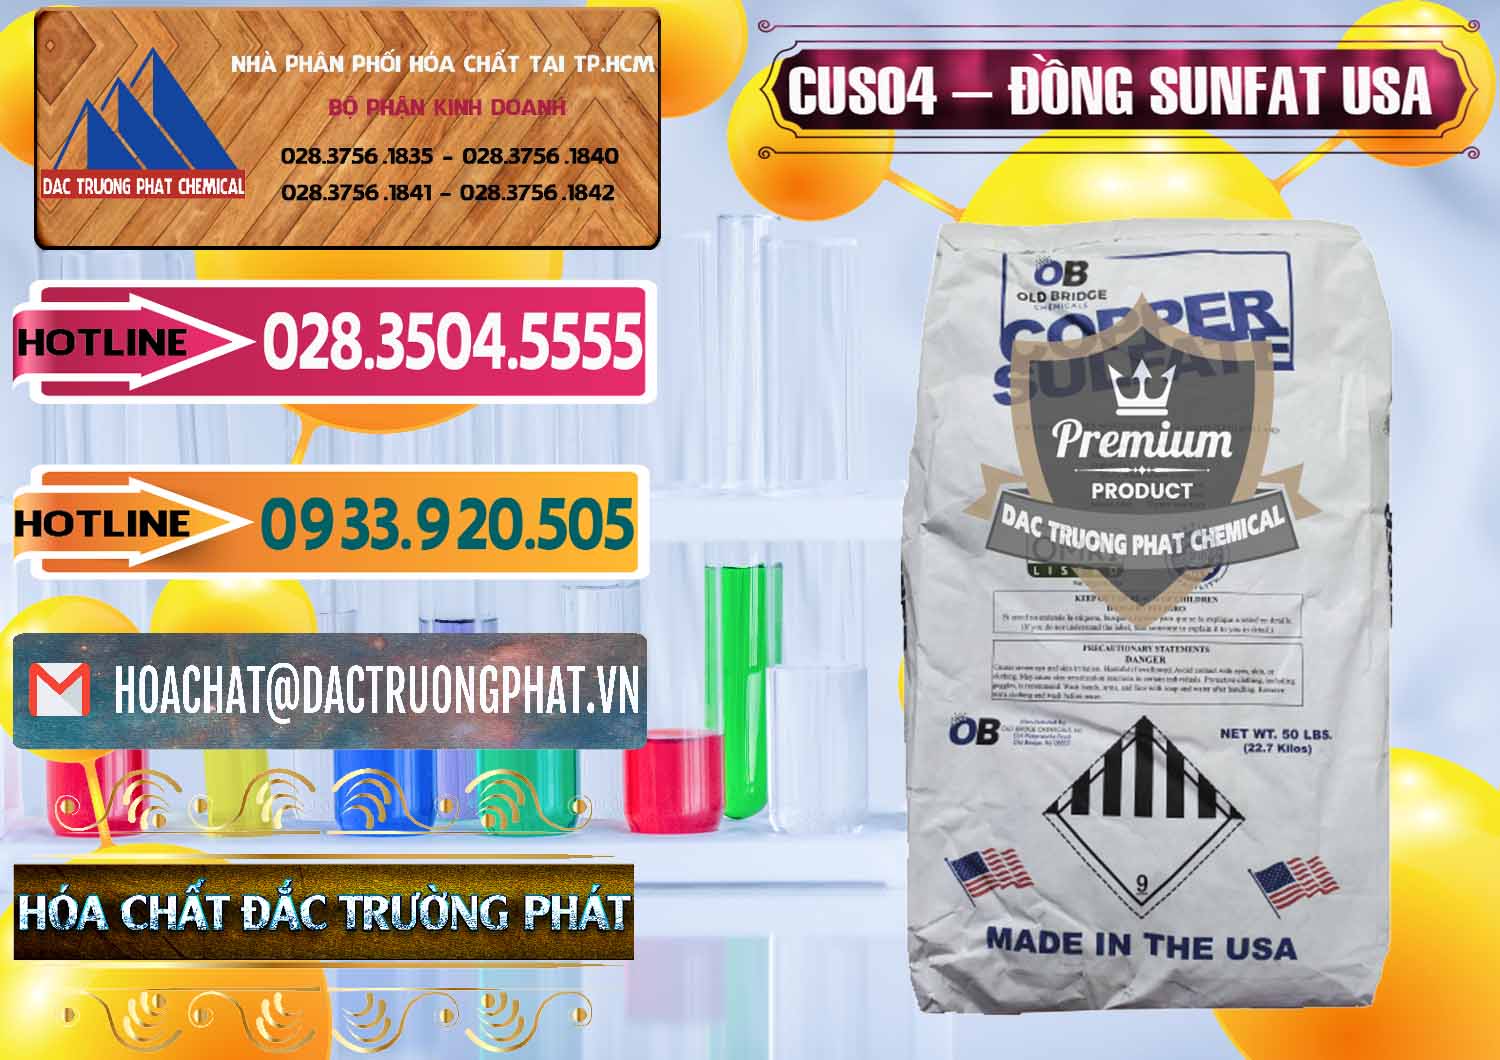 Cty nhập khẩu ( bán ) CuSO4 – Đồng Sunfat Mỹ USA - 0479 - Đơn vị chuyên cung cấp & kinh doanh hóa chất tại TP.HCM - dactruongphat.vn